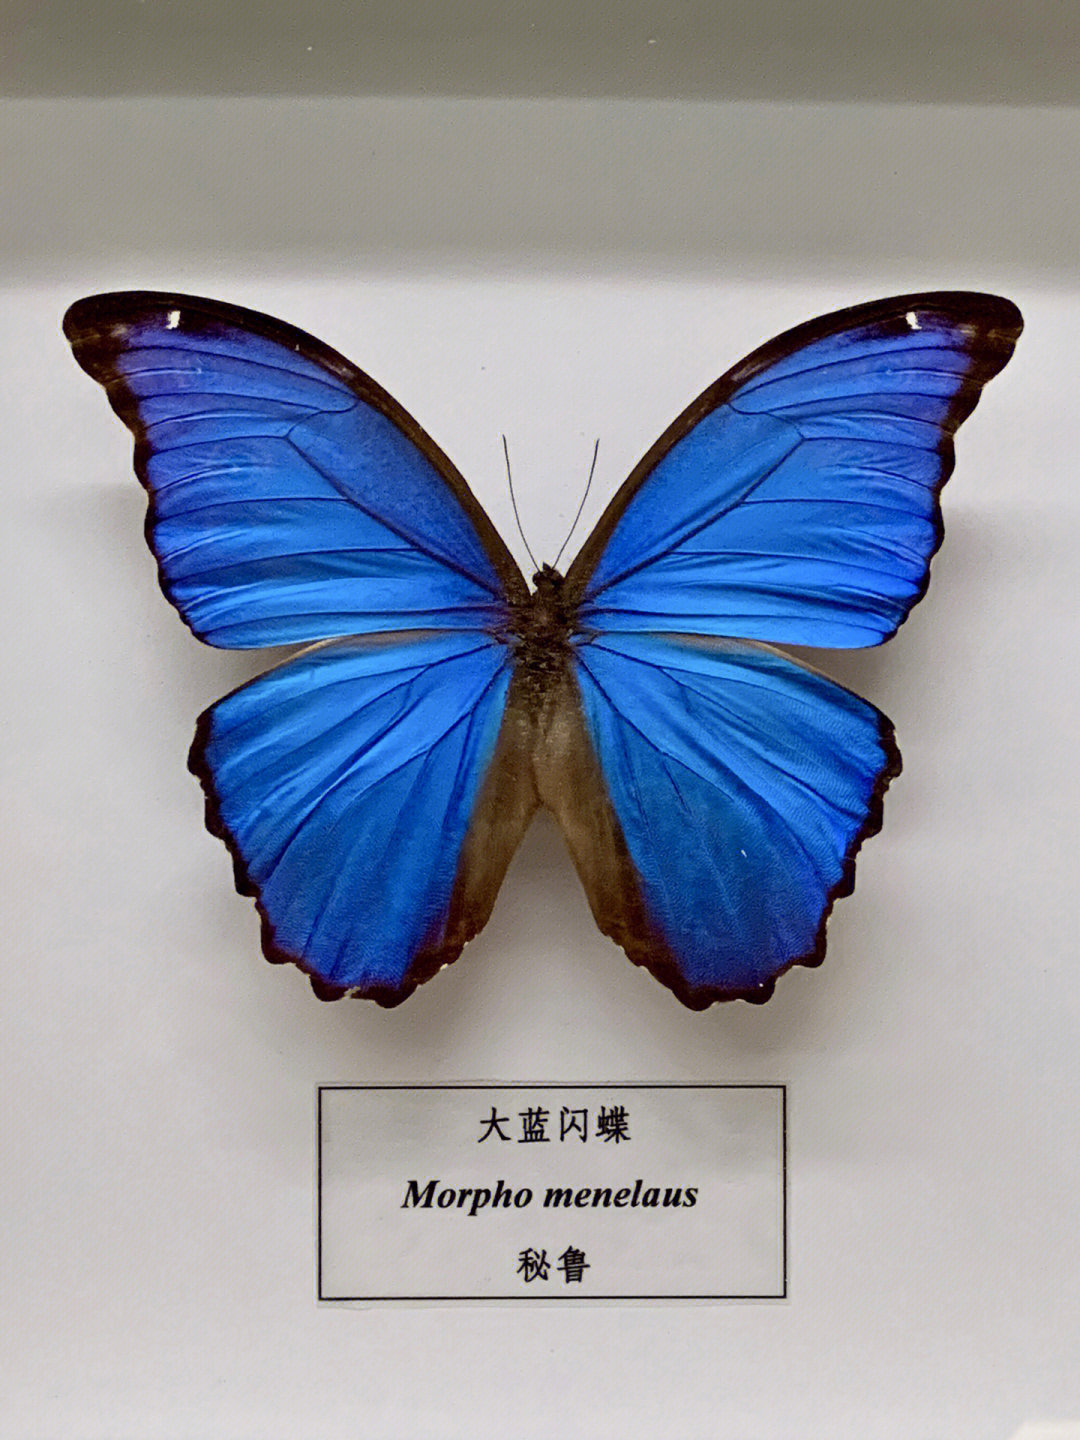 03汕头博物馆昆虫展看到了喜爱的蓝闪蝶